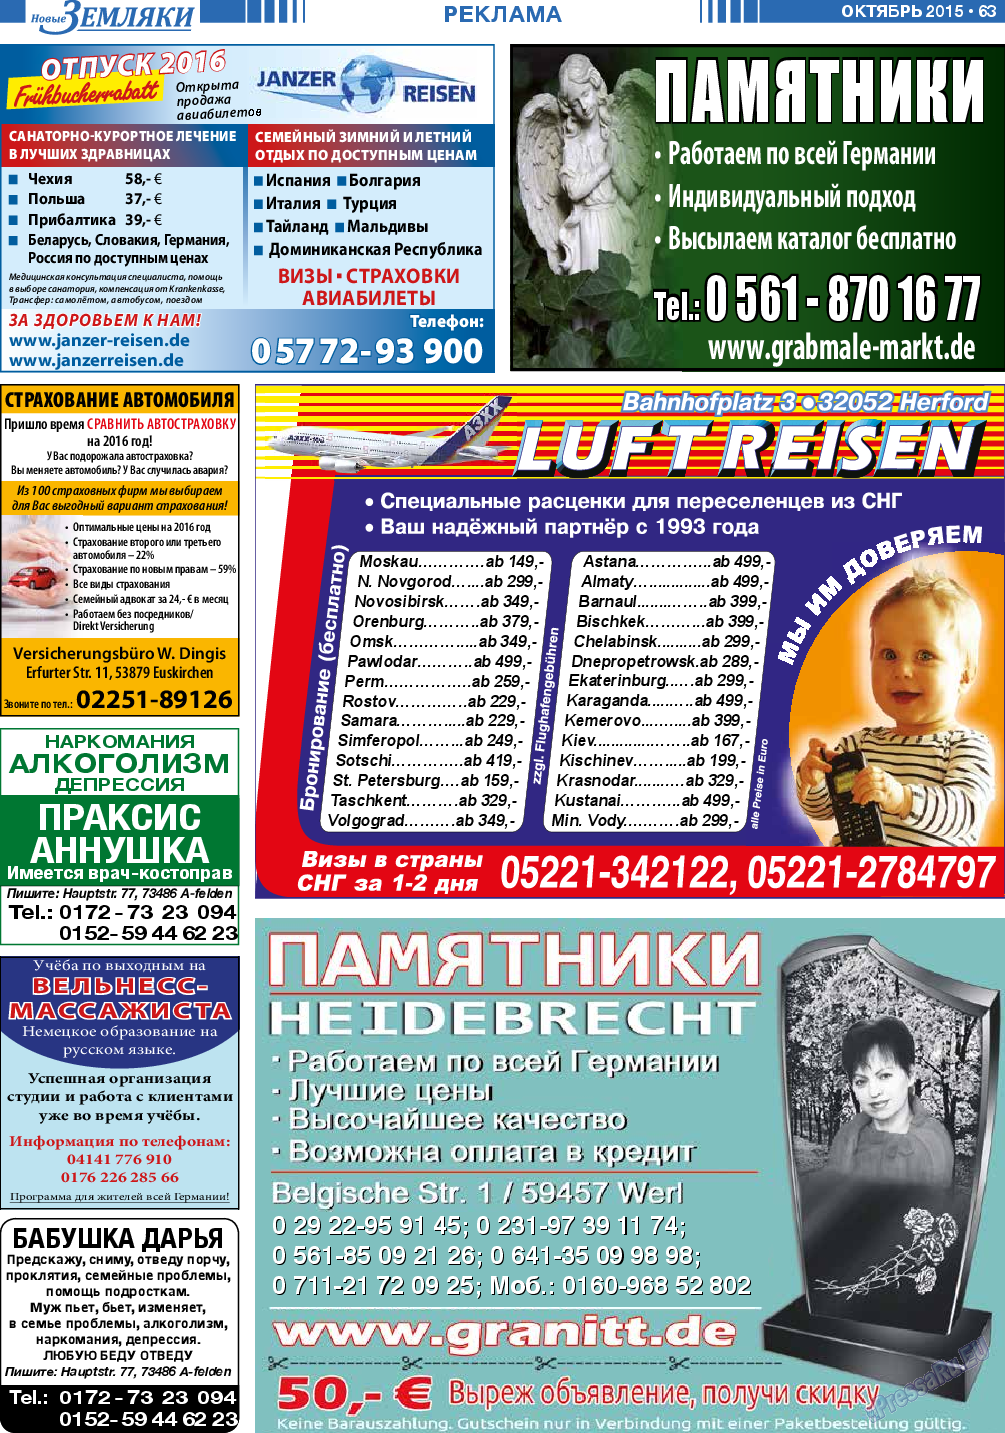 Новые Земляки, газета. 2015 №10 стр.63